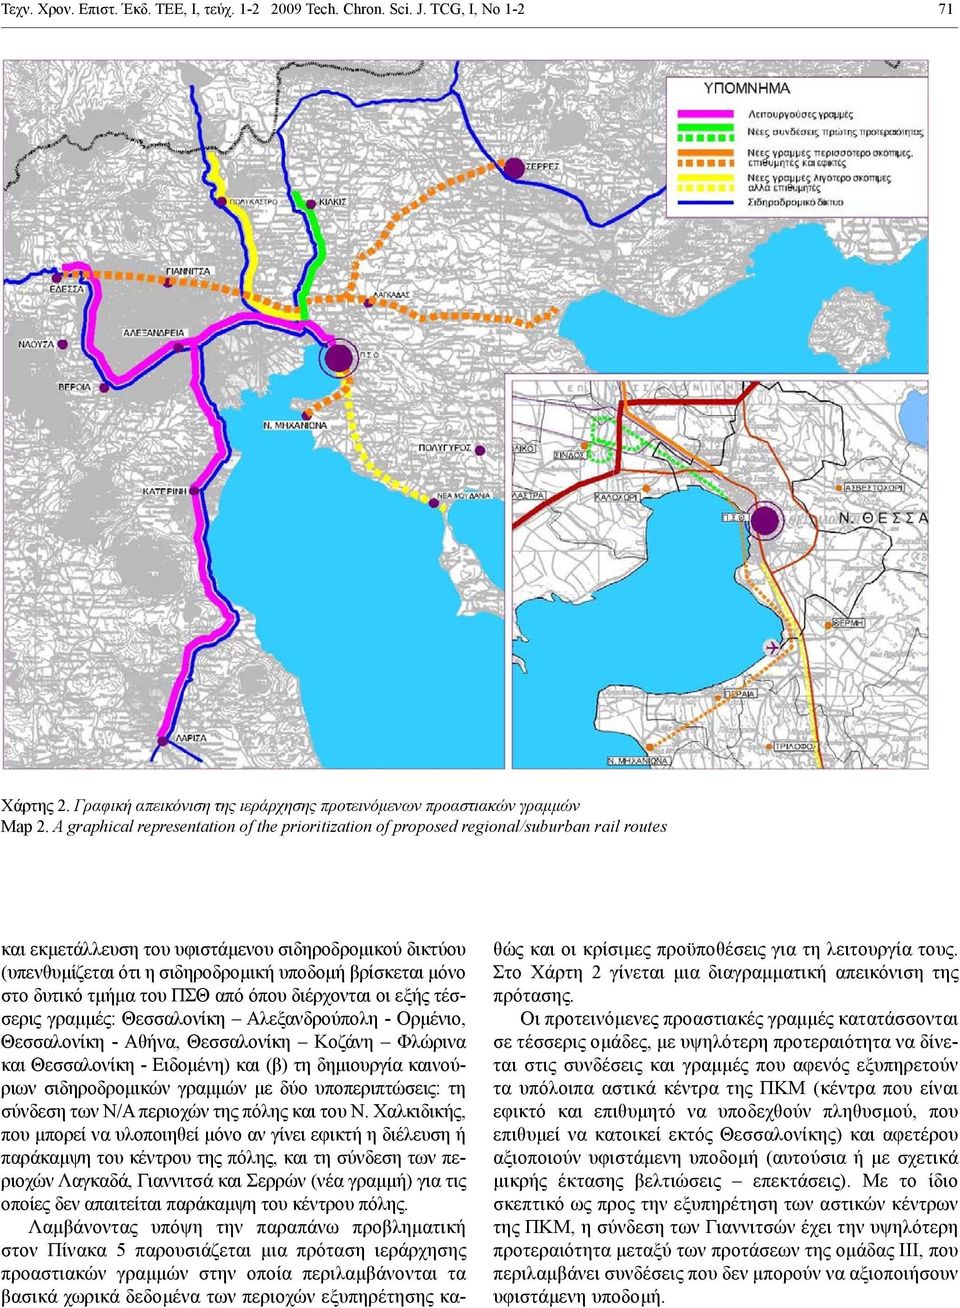 μόνο στο δυτικό τμήμα του ΠΣΘ από όπου διέρχονται οι εξής τέσσερις γραμμές: Θεσσαλονίκη Αλεξανδρούπολη - Ορμένιο, Θεσσαλονίκη - Αθήνα, Θεσσαλονίκη Κοζάνη Φλώρινα και Θεσσαλονίκη - Ειδομένη) και (β)